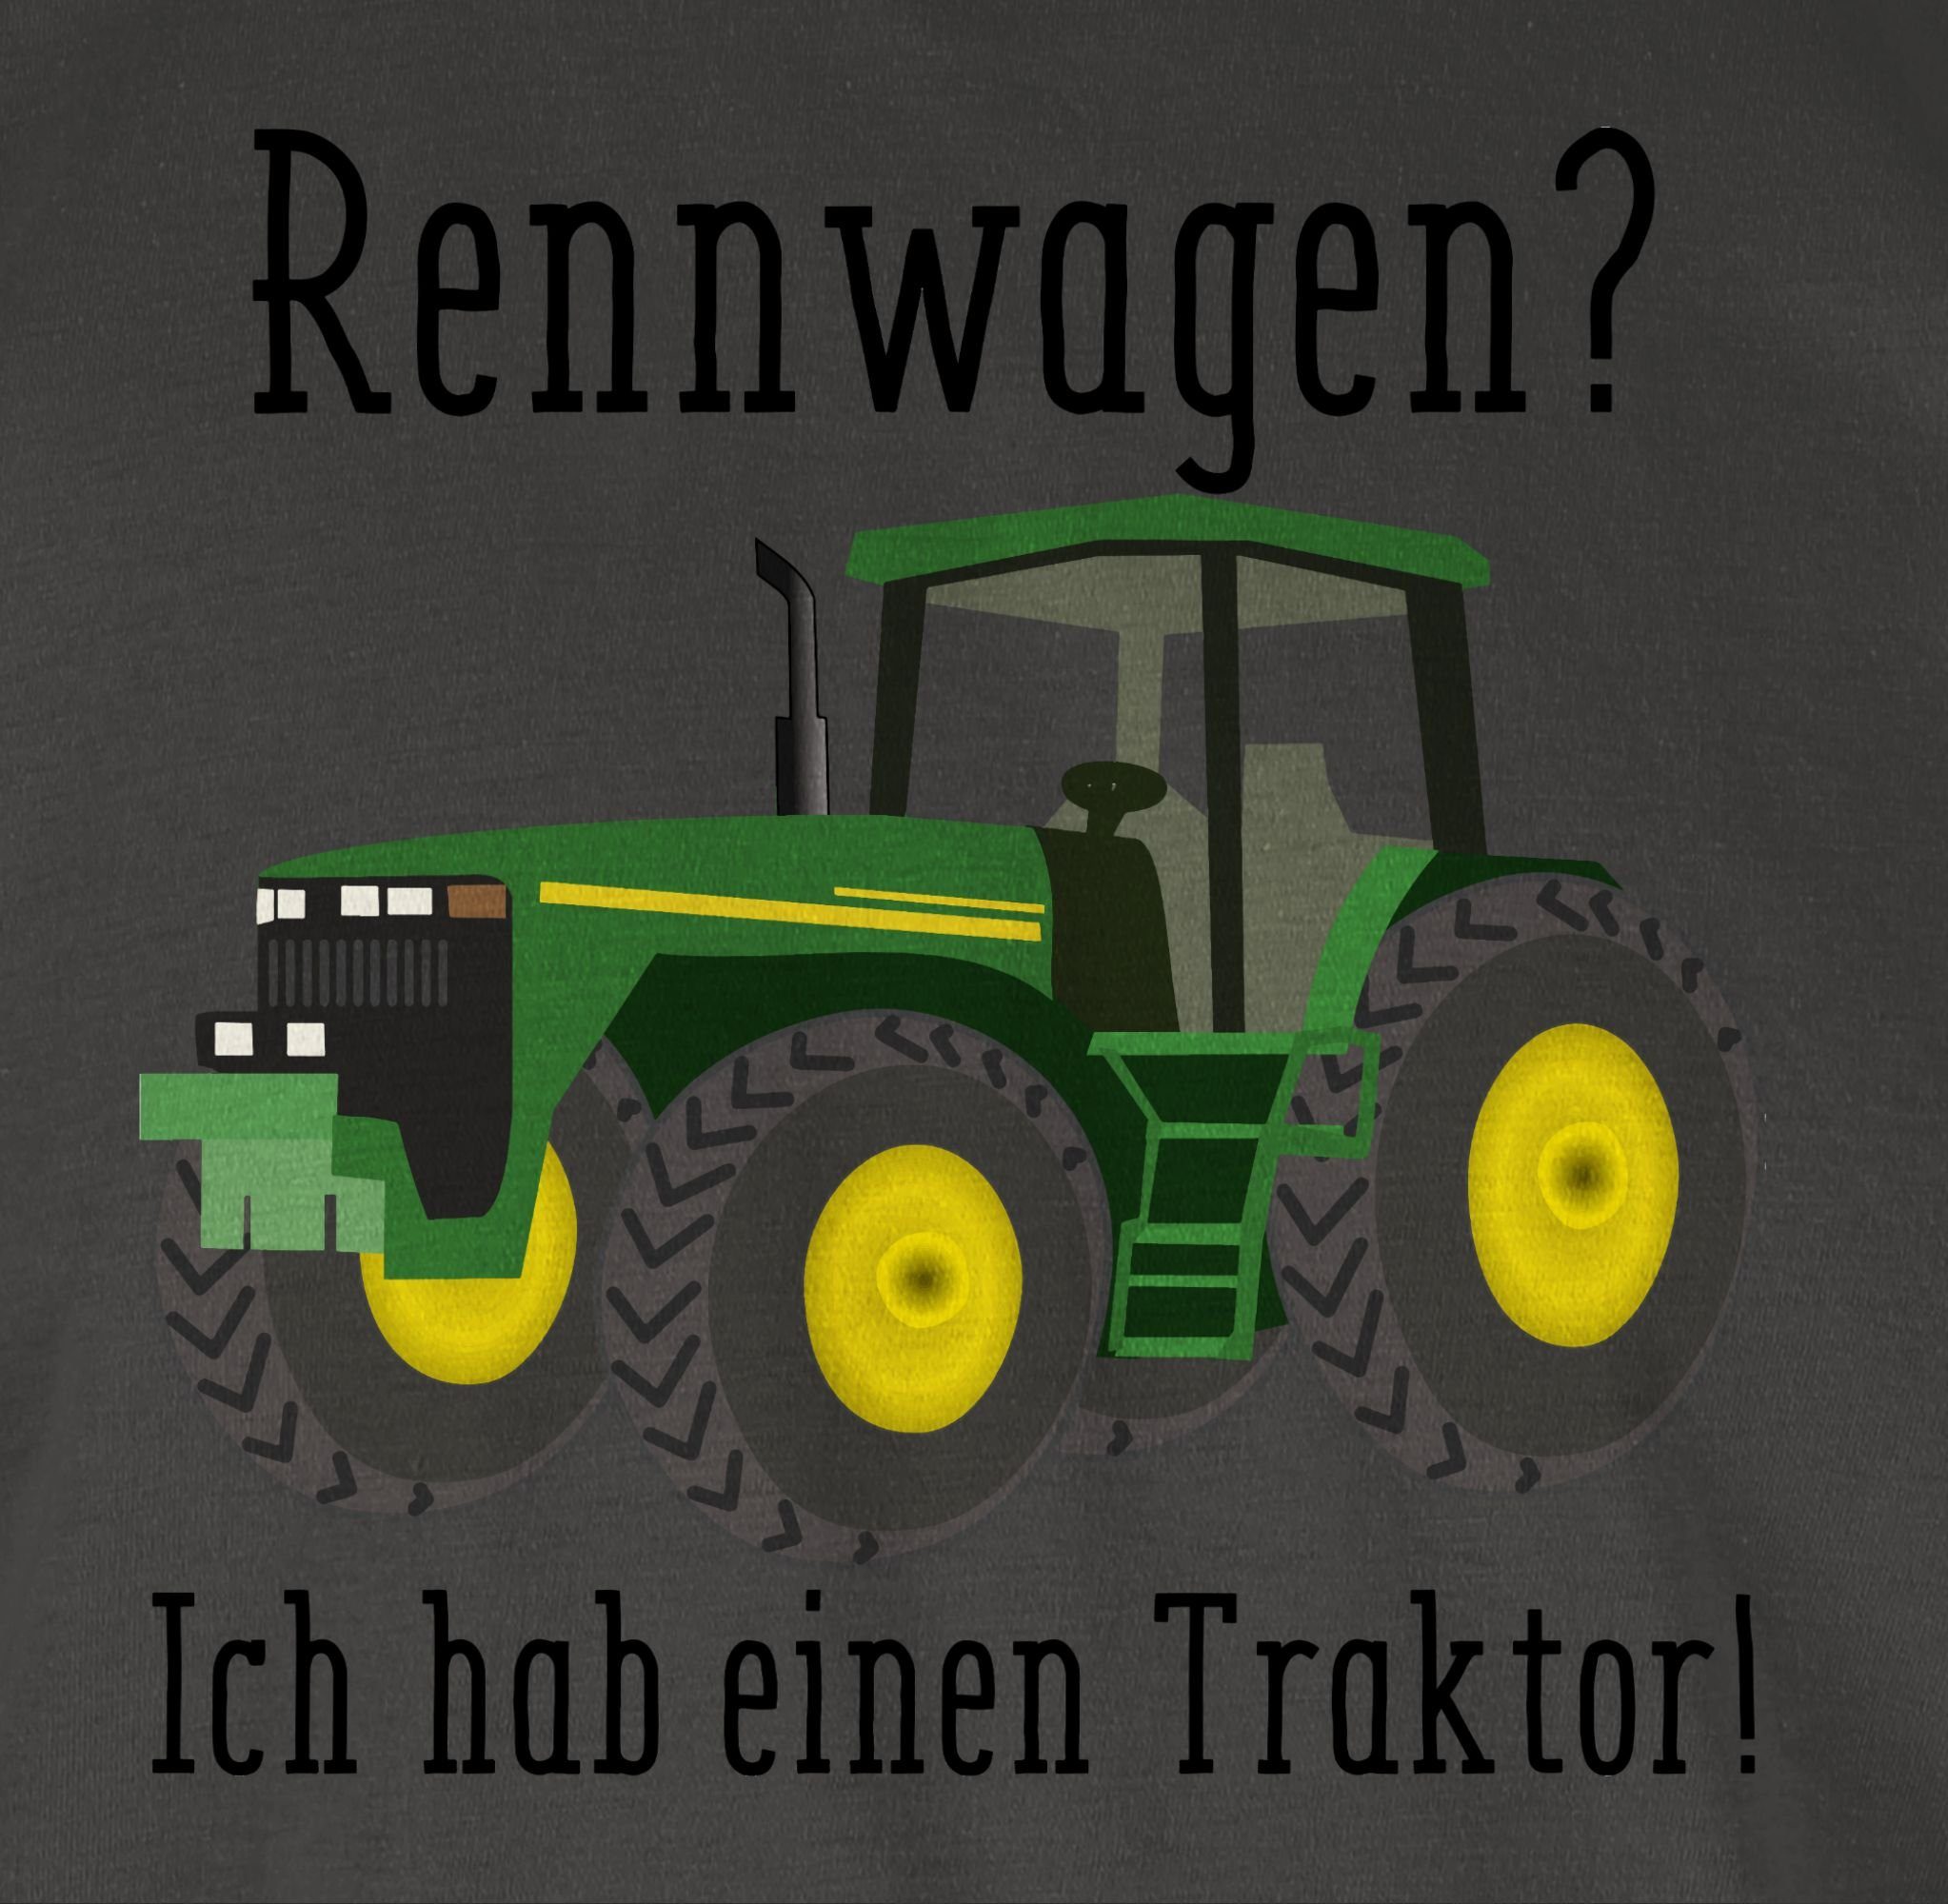 einen - Bauer T-Shirt 2 Geschenk Rennwagen Ich Traktor Ges habe Shirtracer Trecker Dunkelgrau Traktor Landwirt